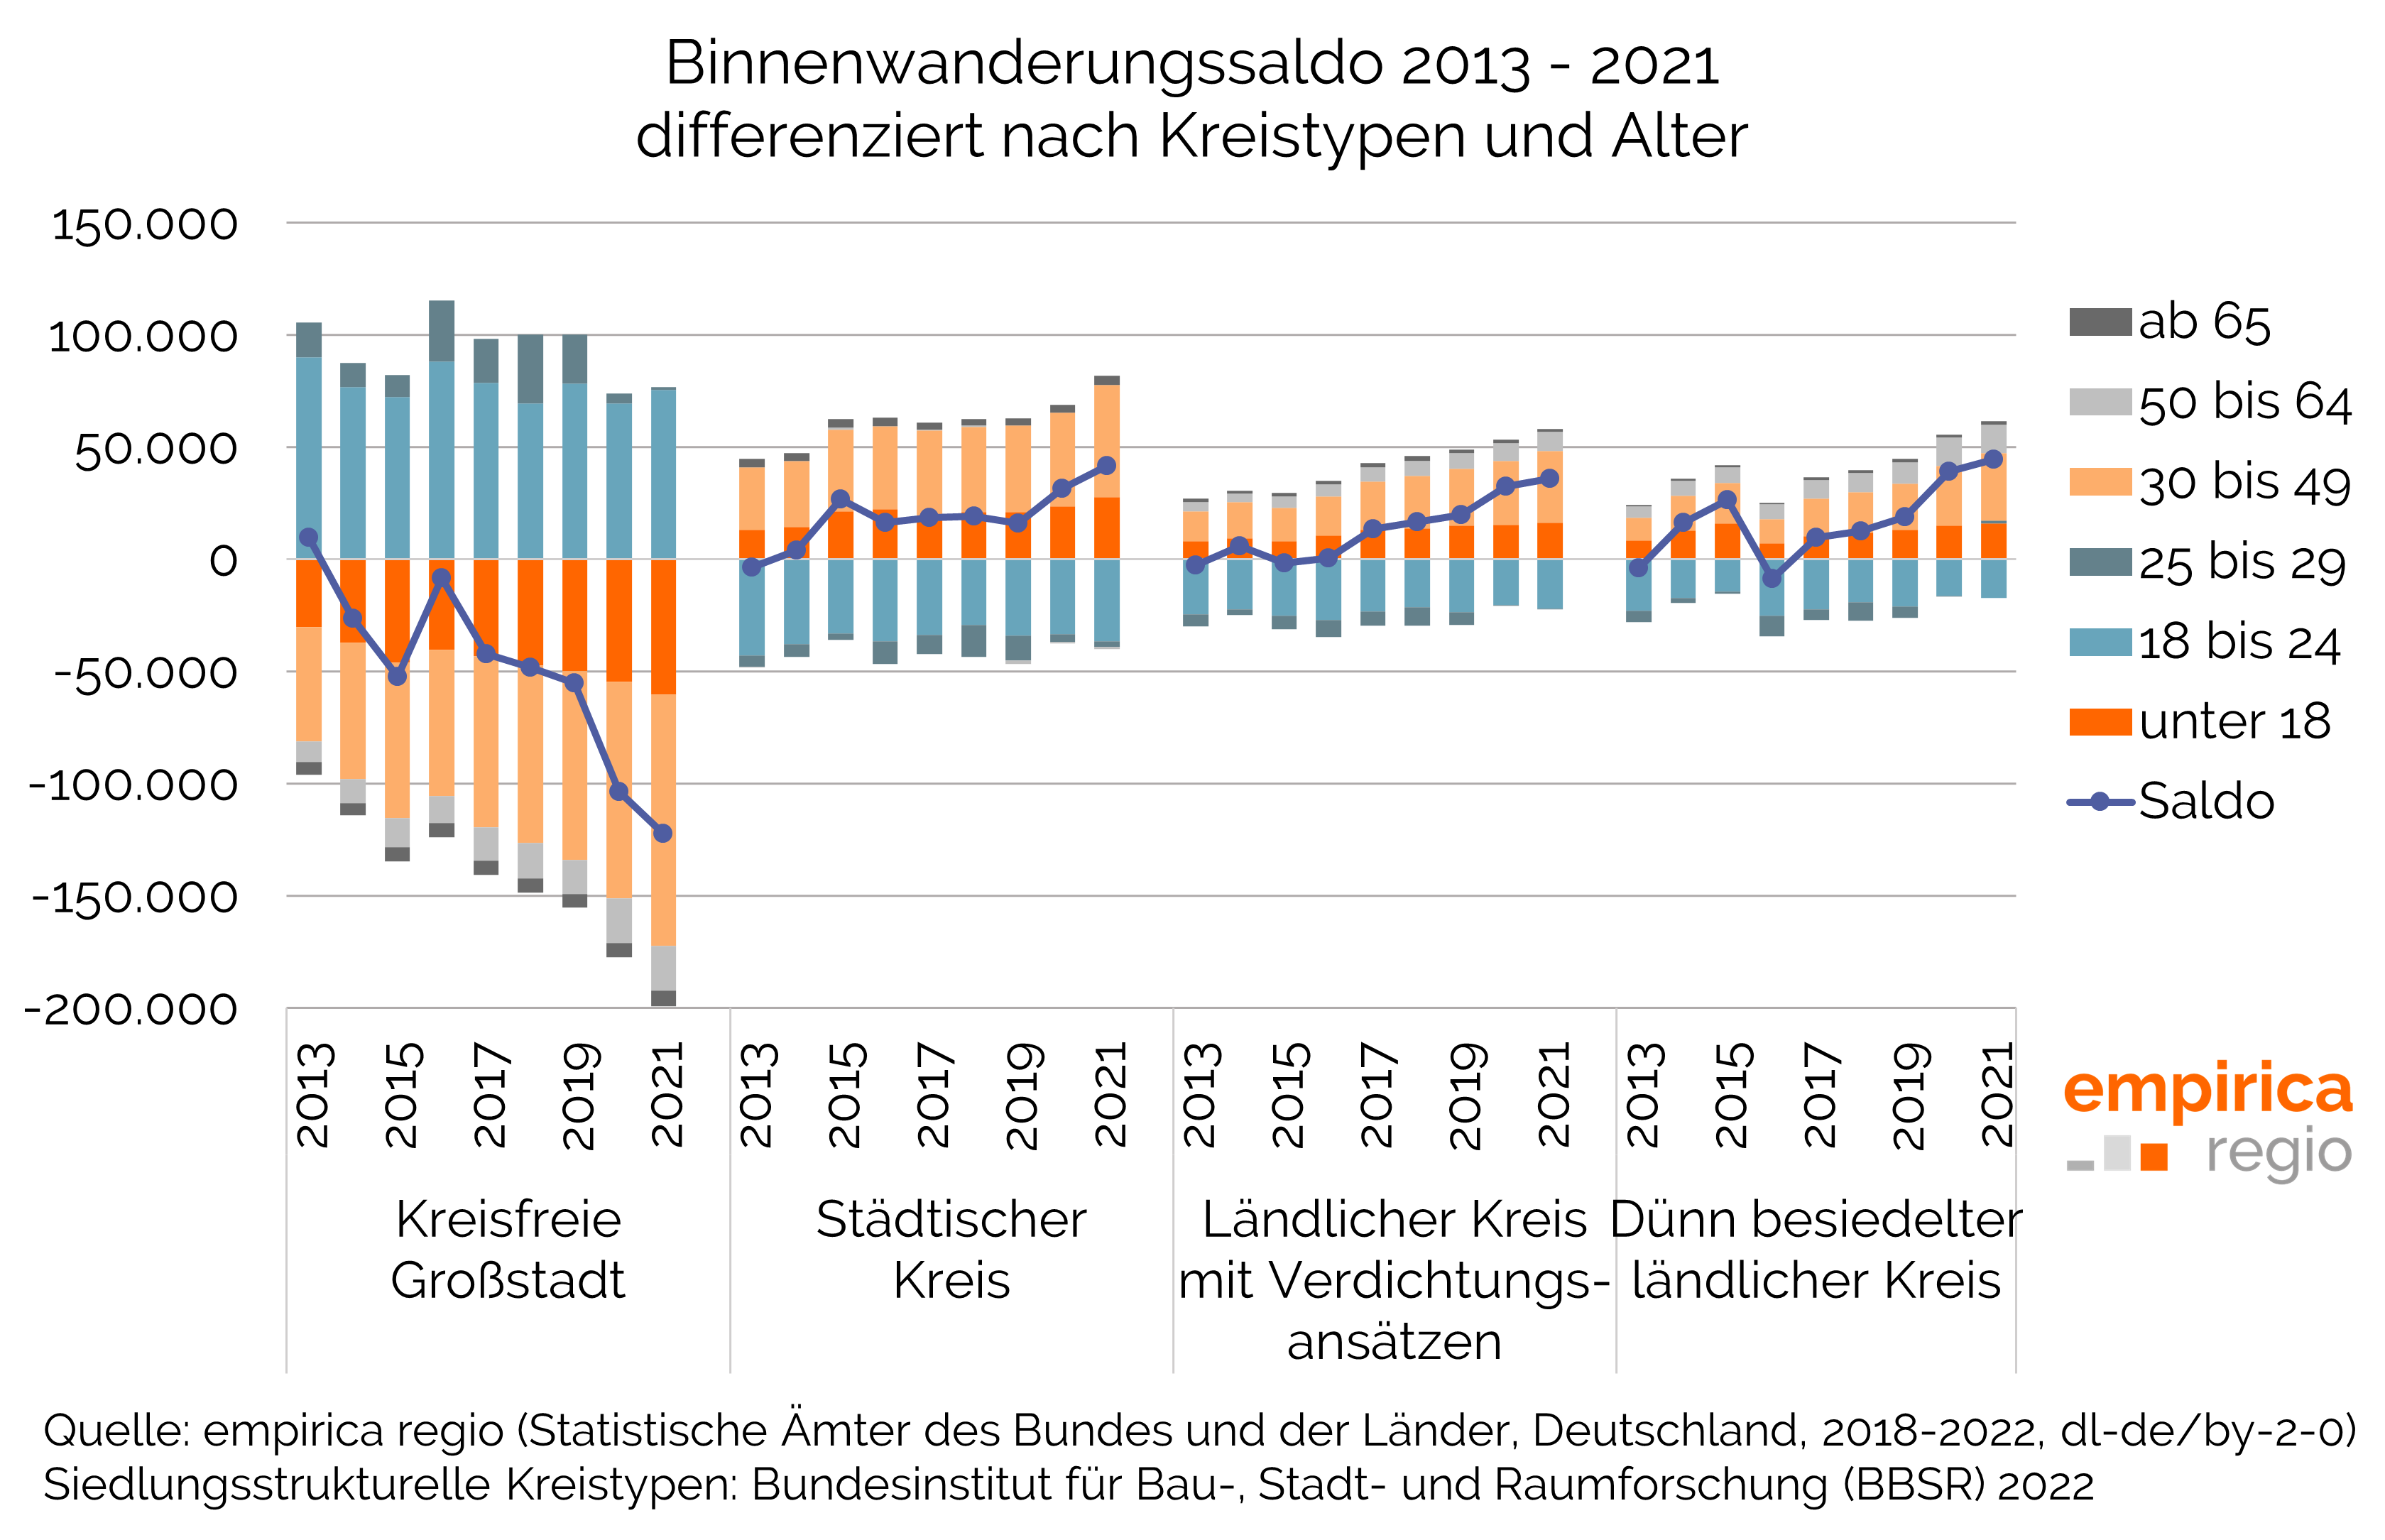 Binnenwanderungssaldo 2013 - 2021 differenziert nach Kreistypen und Alter